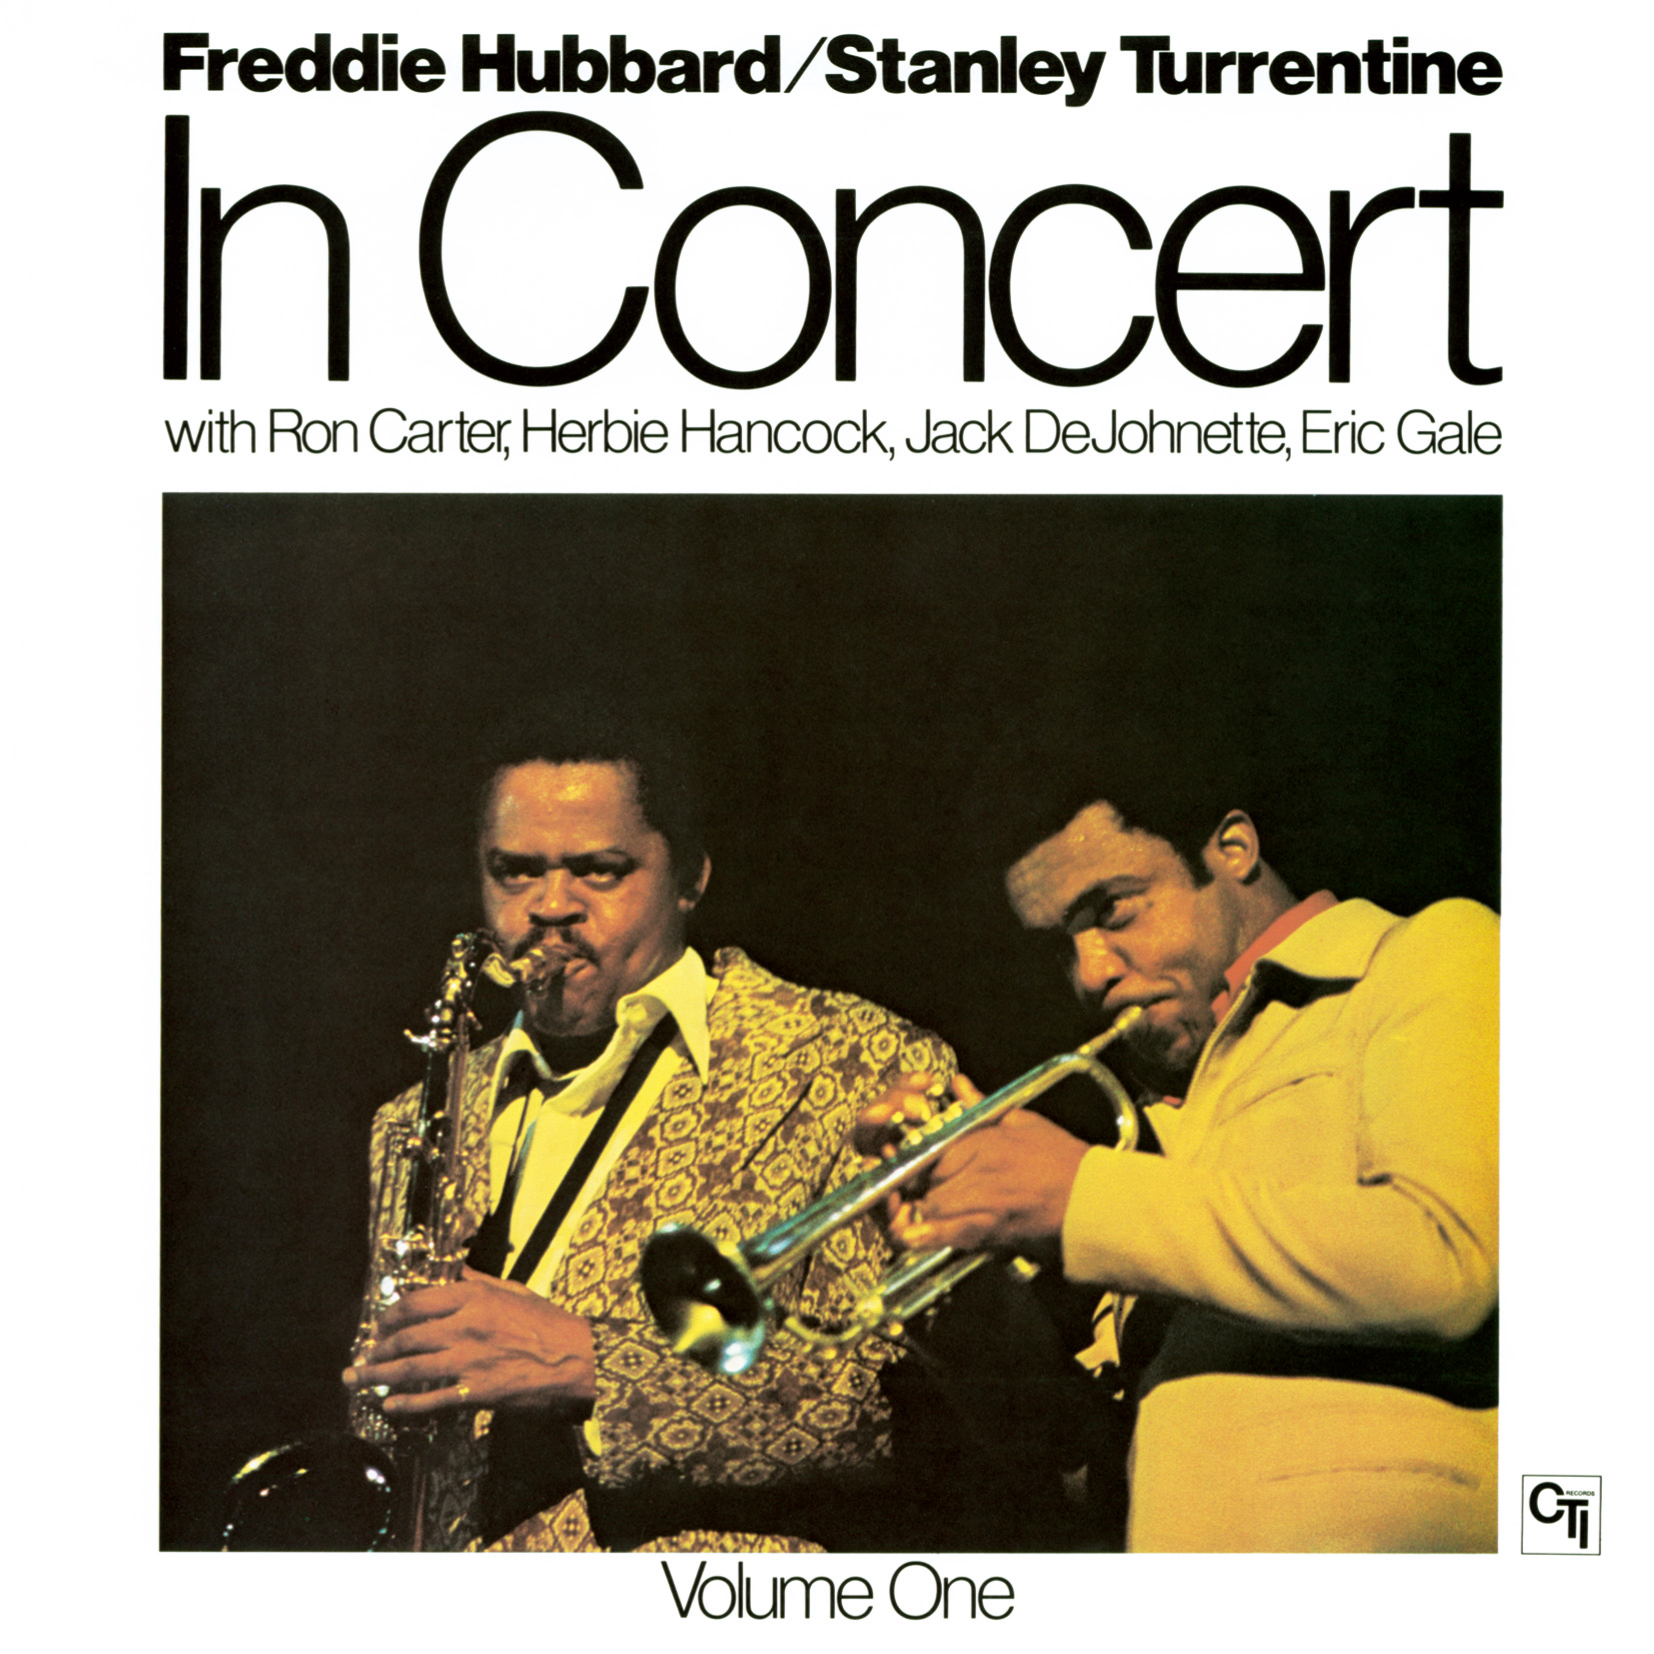 Freddie Hubbard & Stanley Turrentine – In Concert Vol.1 (Remastered) (1973/2017) [FLAC 24bit/192kHz]